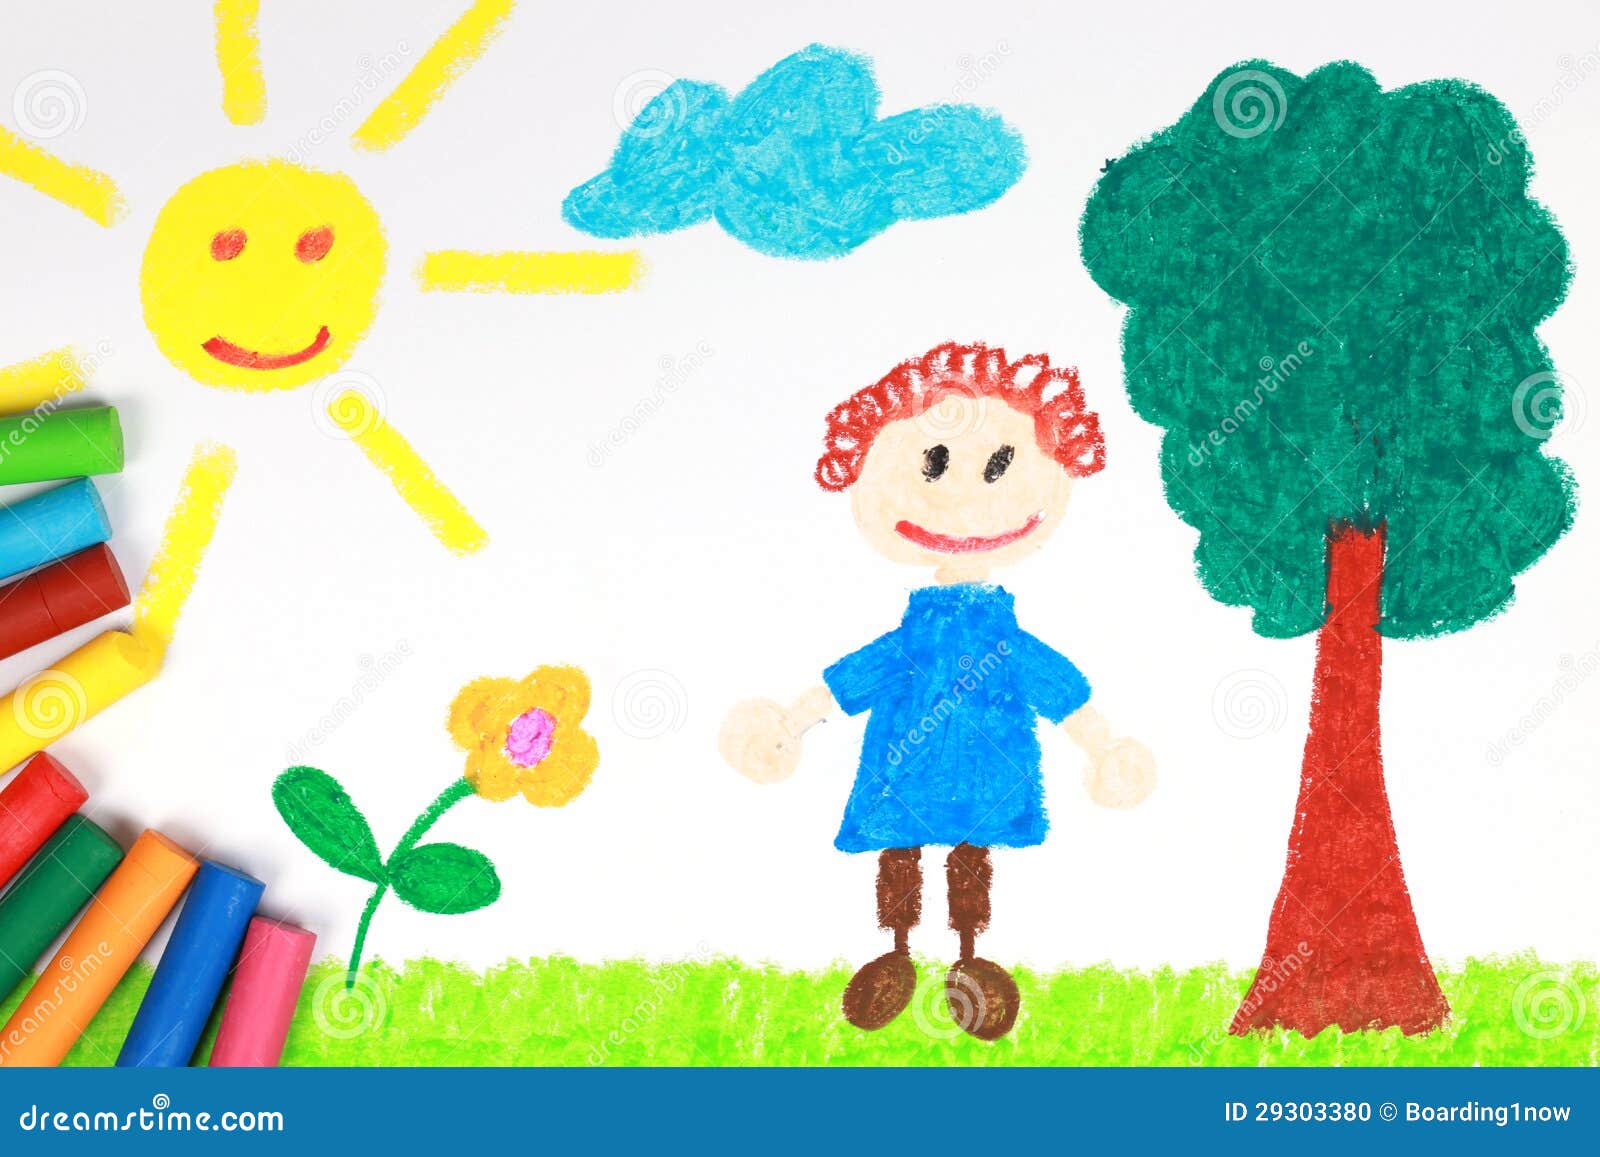 小家伙样式一个绿色草甸的蜡笔画有树,子项,星期日和花的.